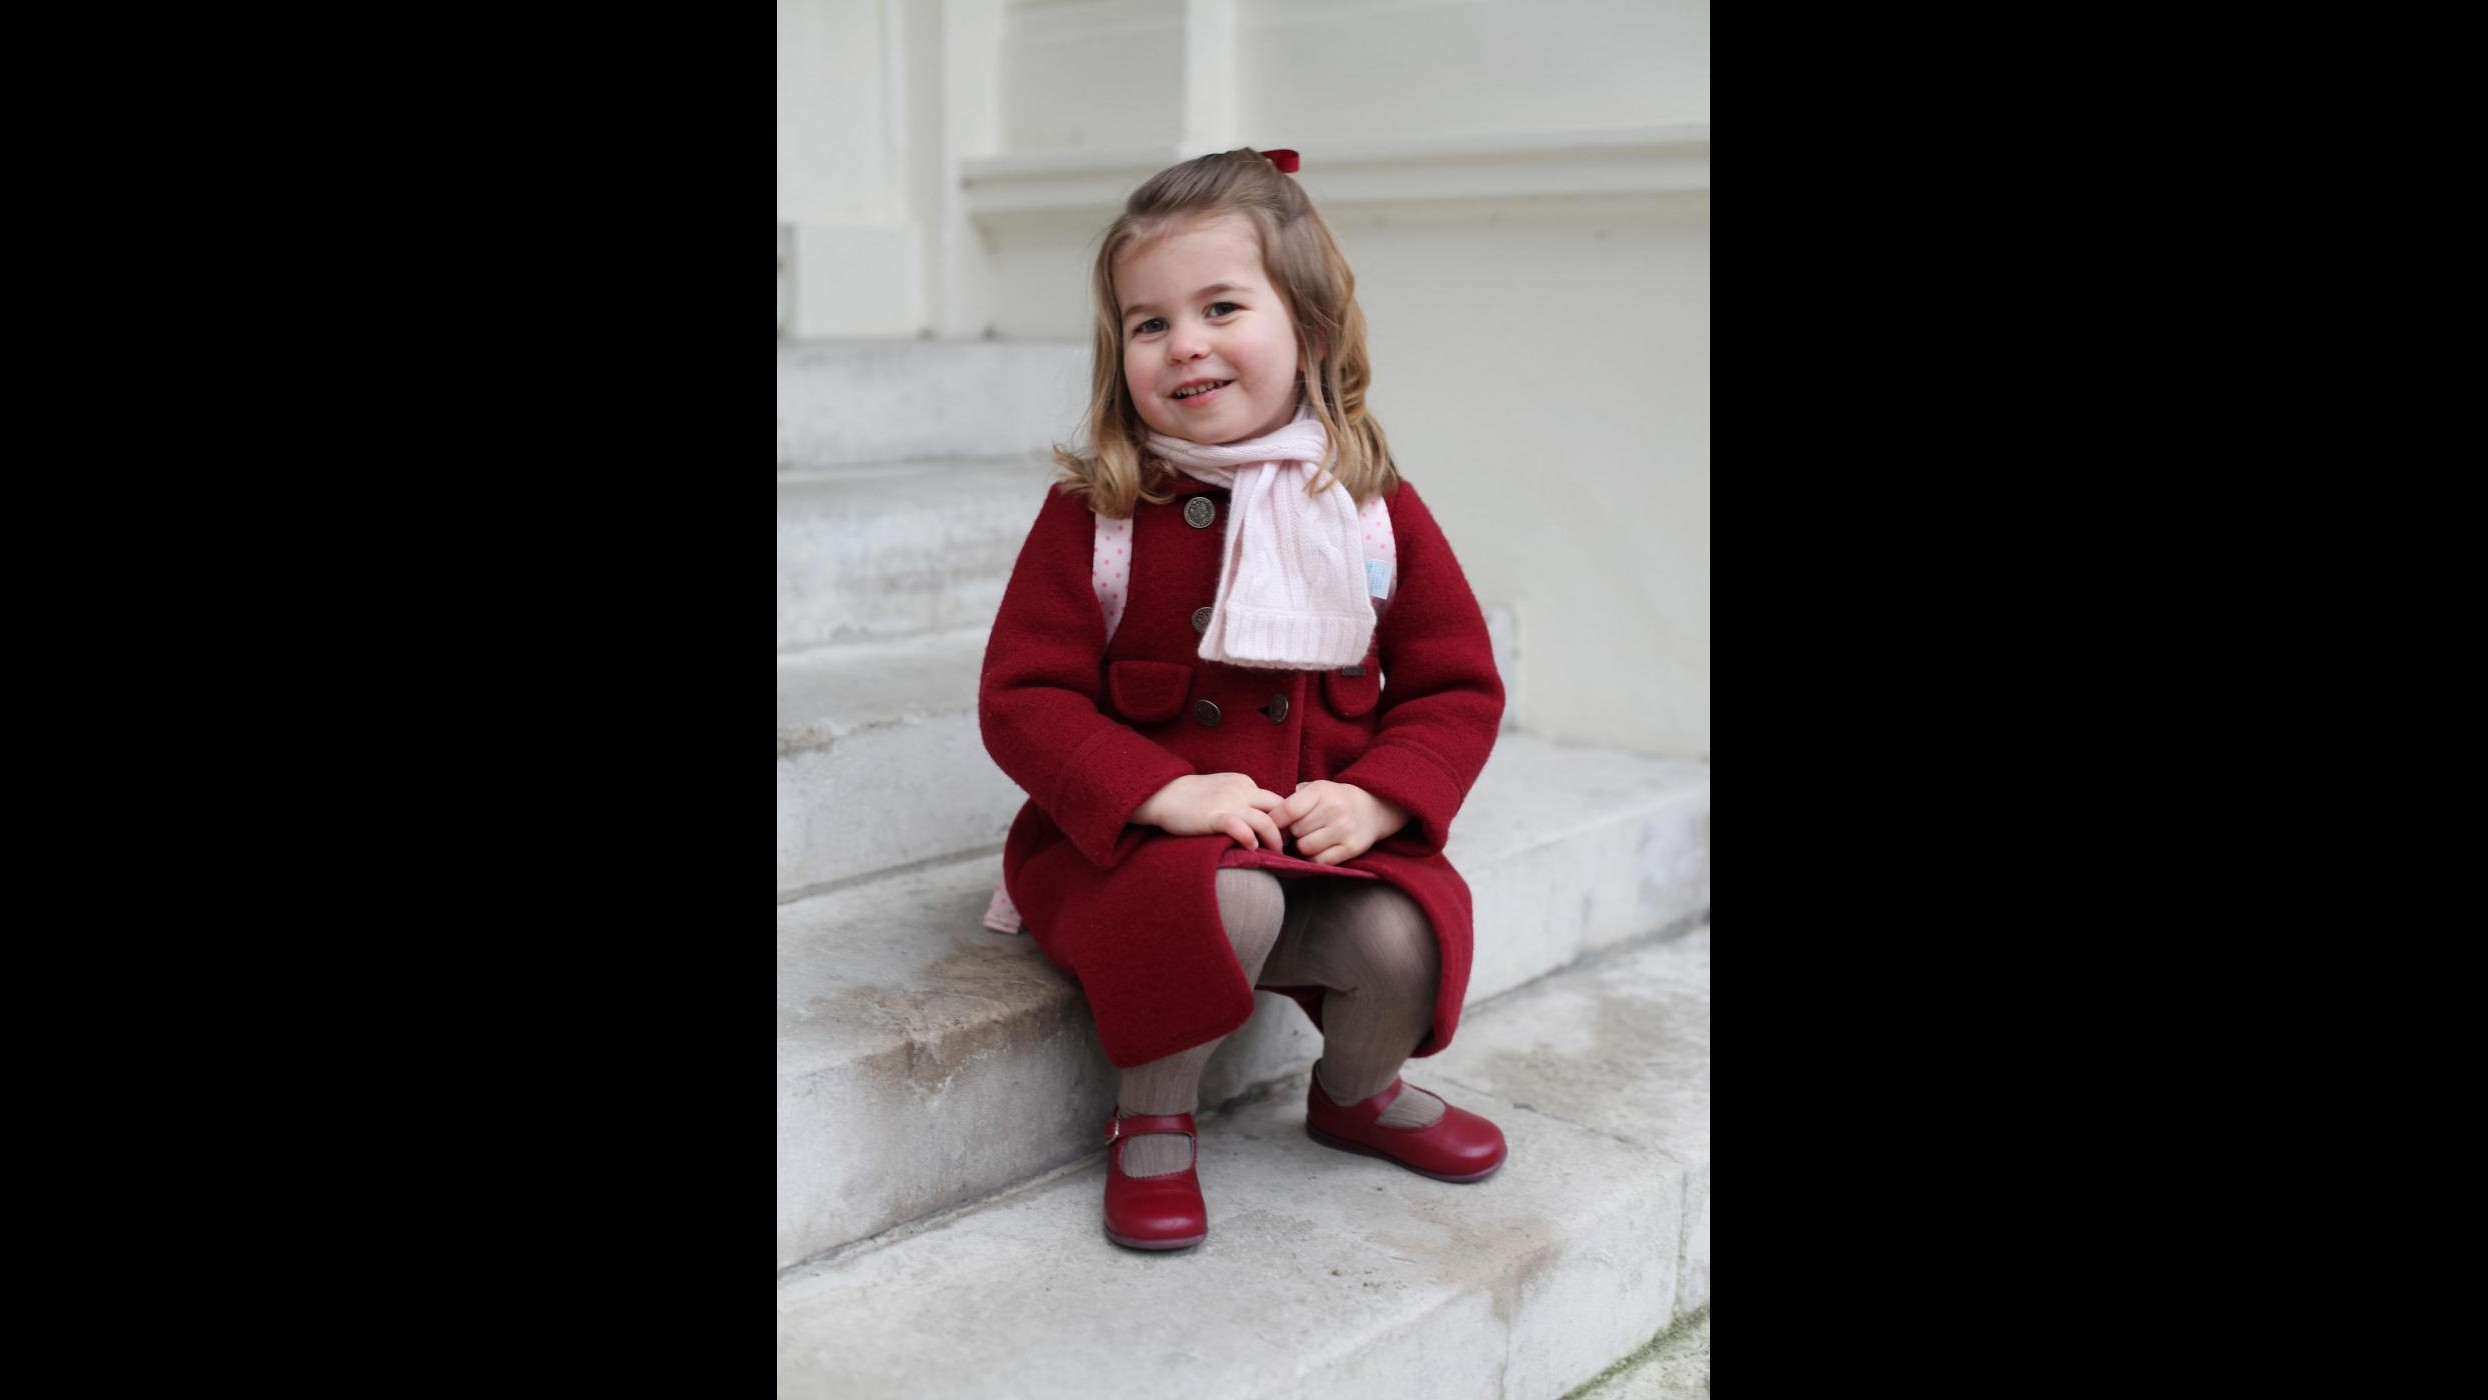 Piccoli reali crescono: primo giorno di scuola per la principessa Charlotte